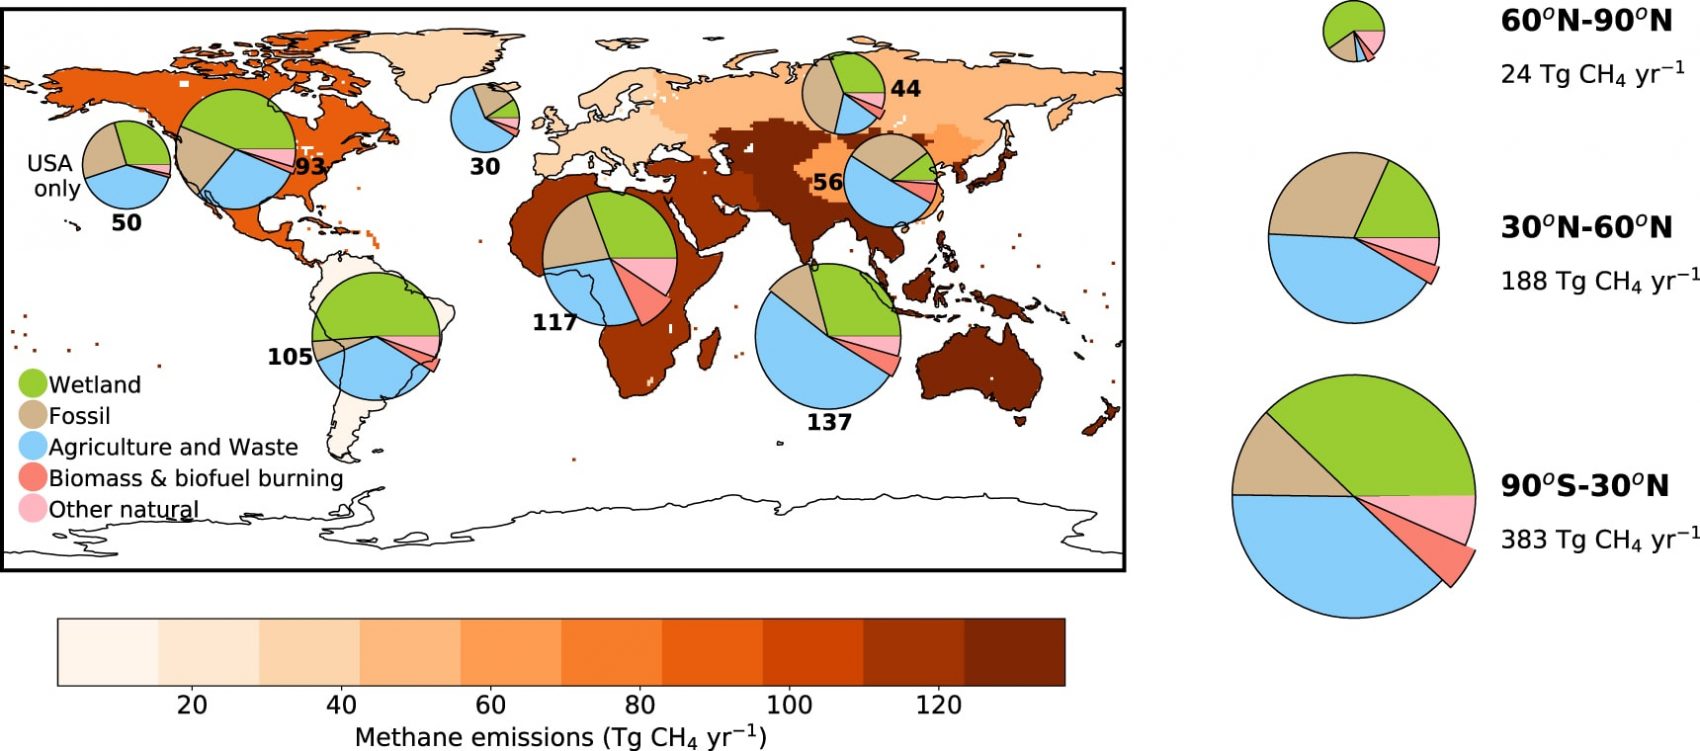 Emissions by Region